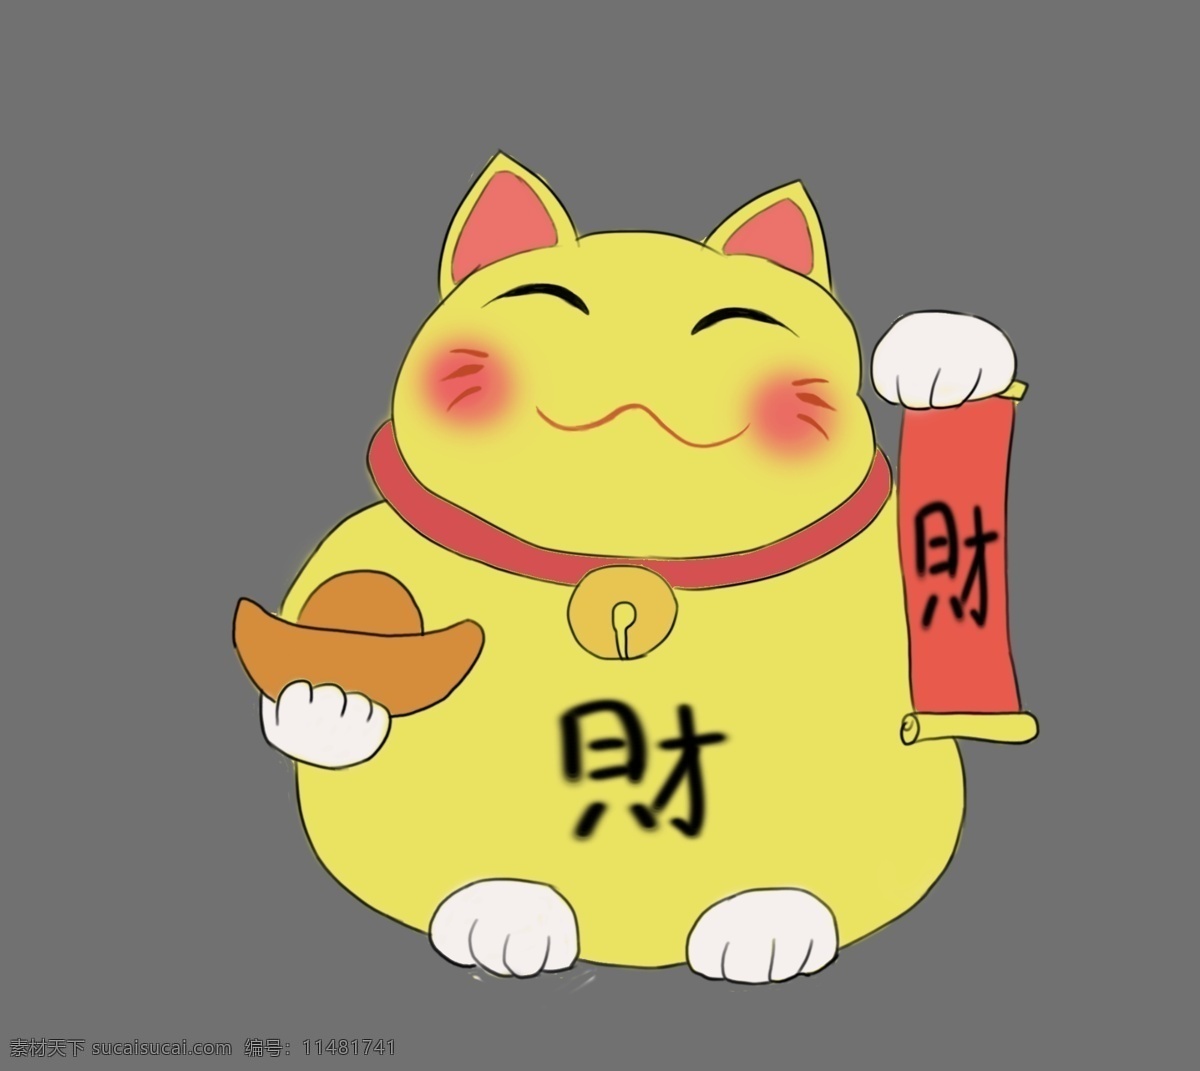 日本 胖胖 招 财 猫 插画 黄色的招财猫 卡通插画 日本插画 日本风情 日本小物 日本标志 胖胖的猫咪